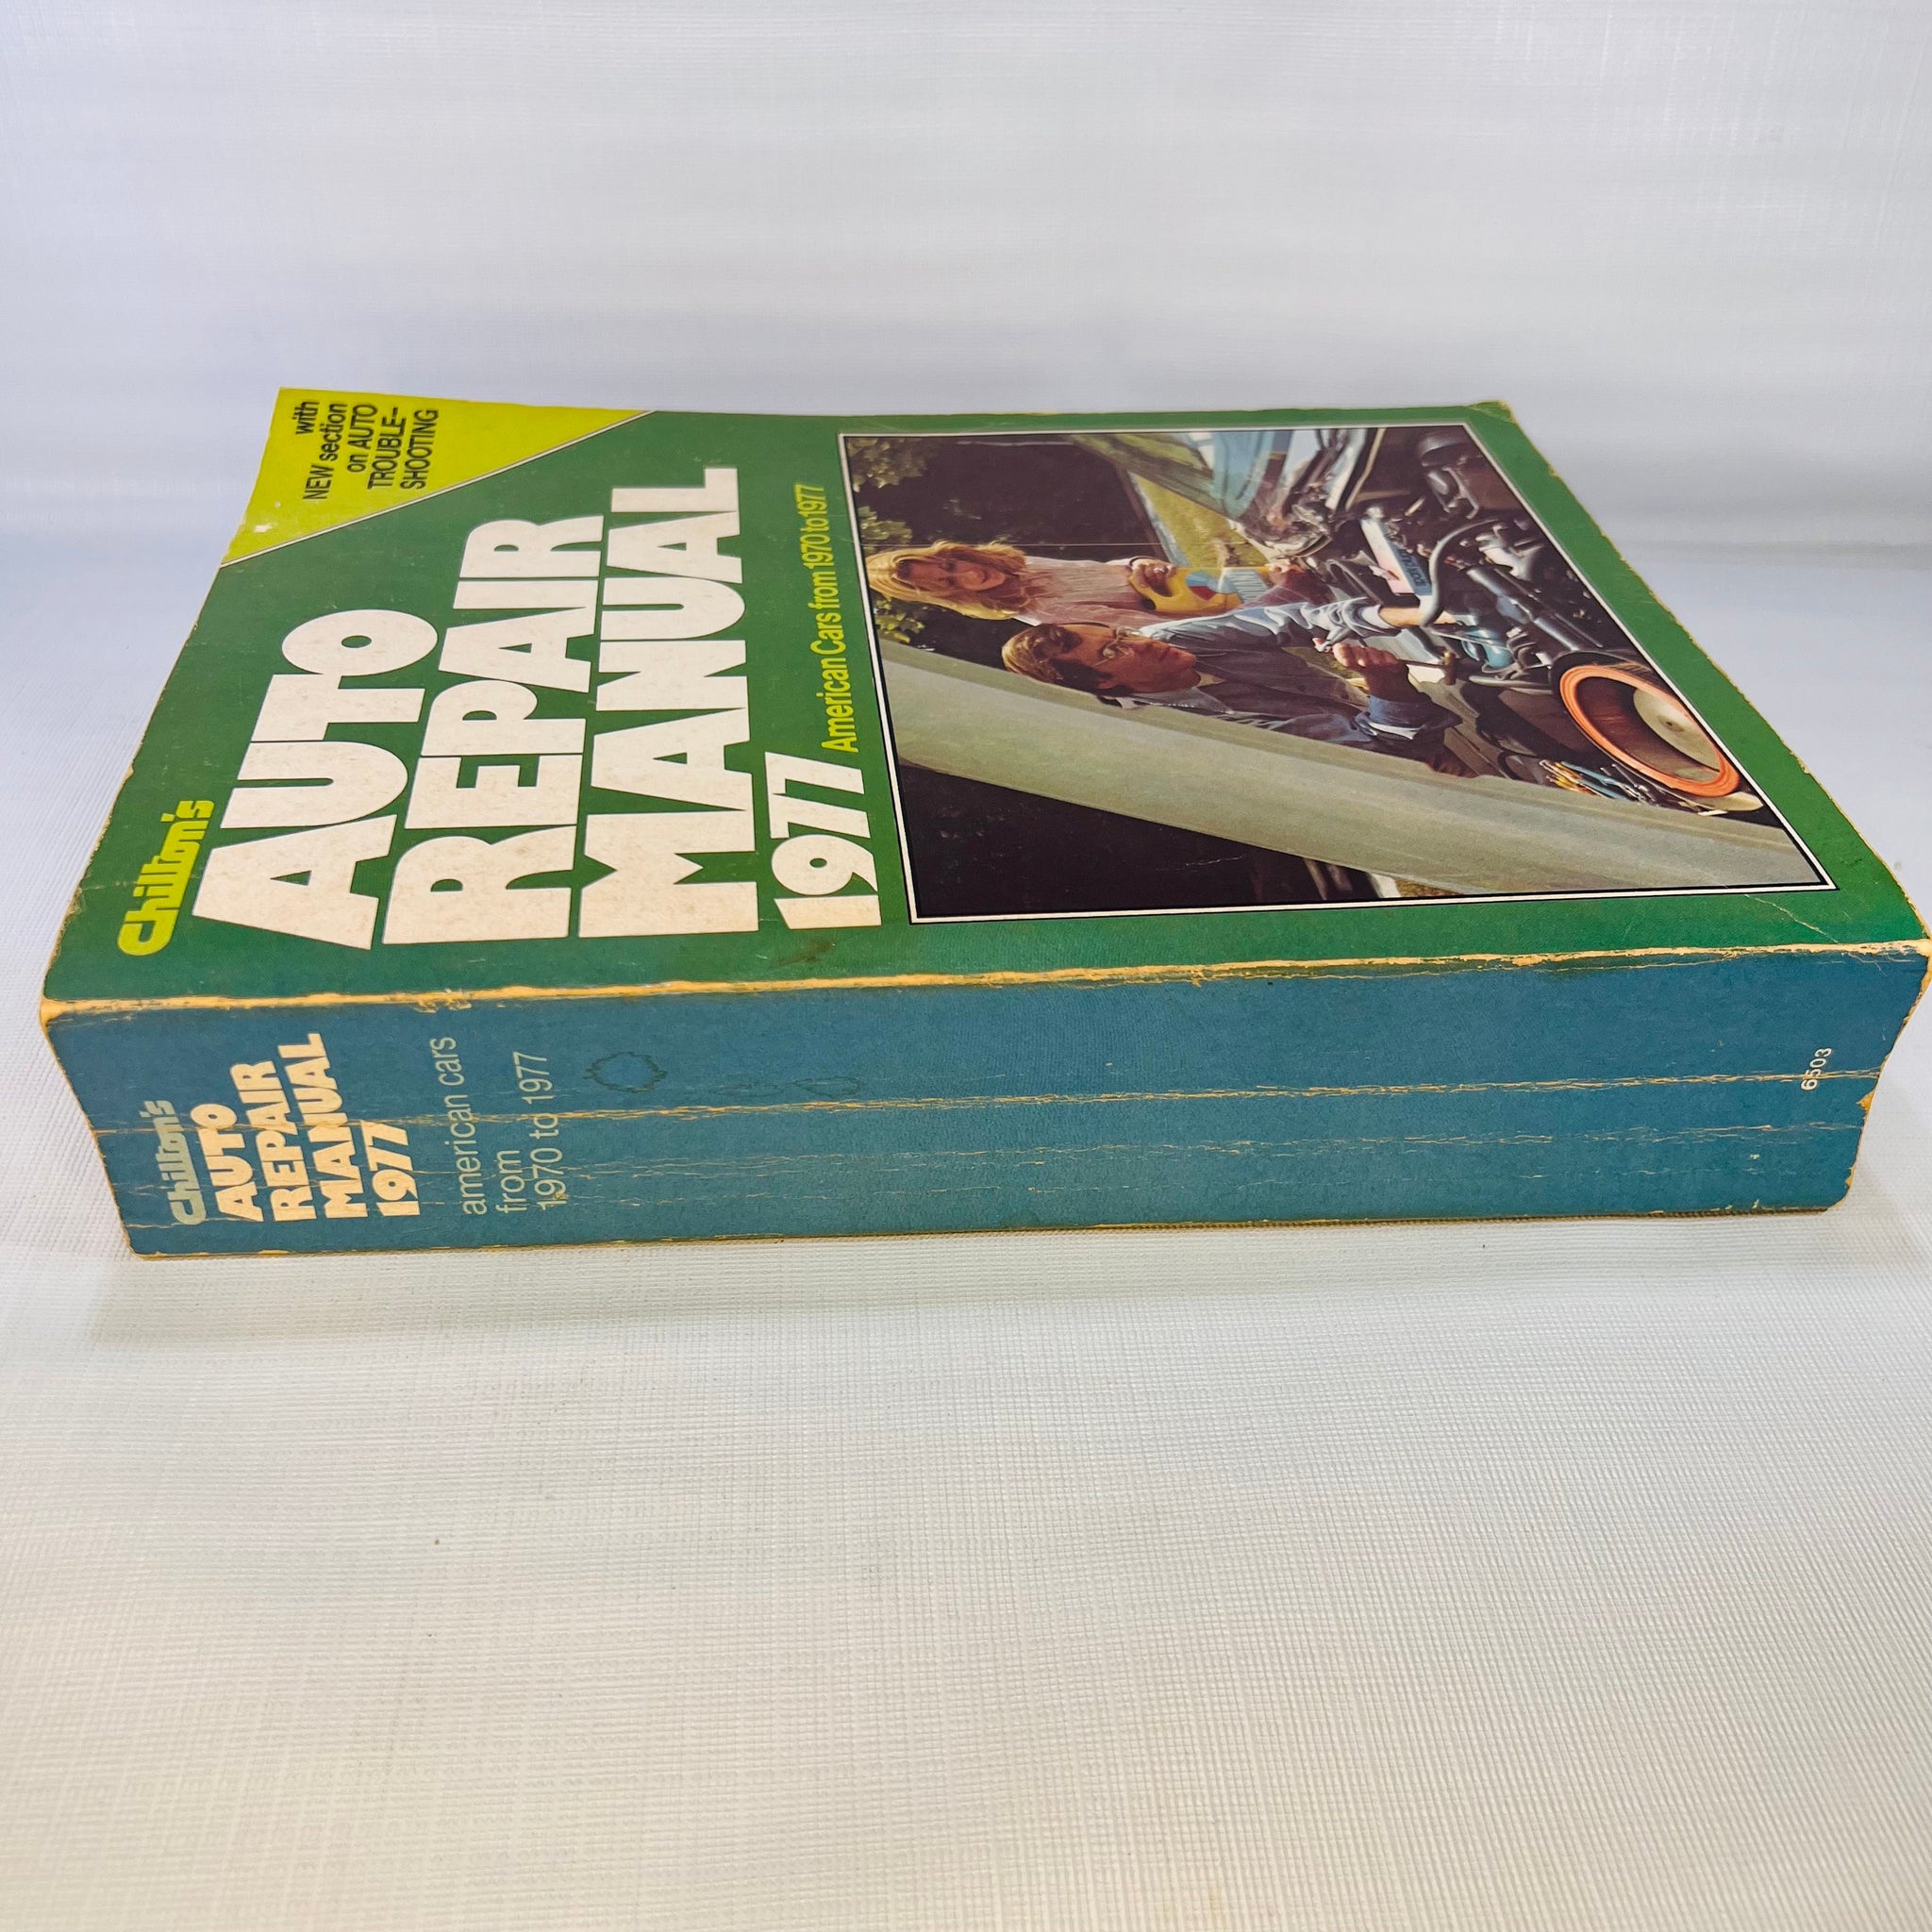 Chilton's Auto Repair Manual 1977 Chilton Book Company-Reading Vintage